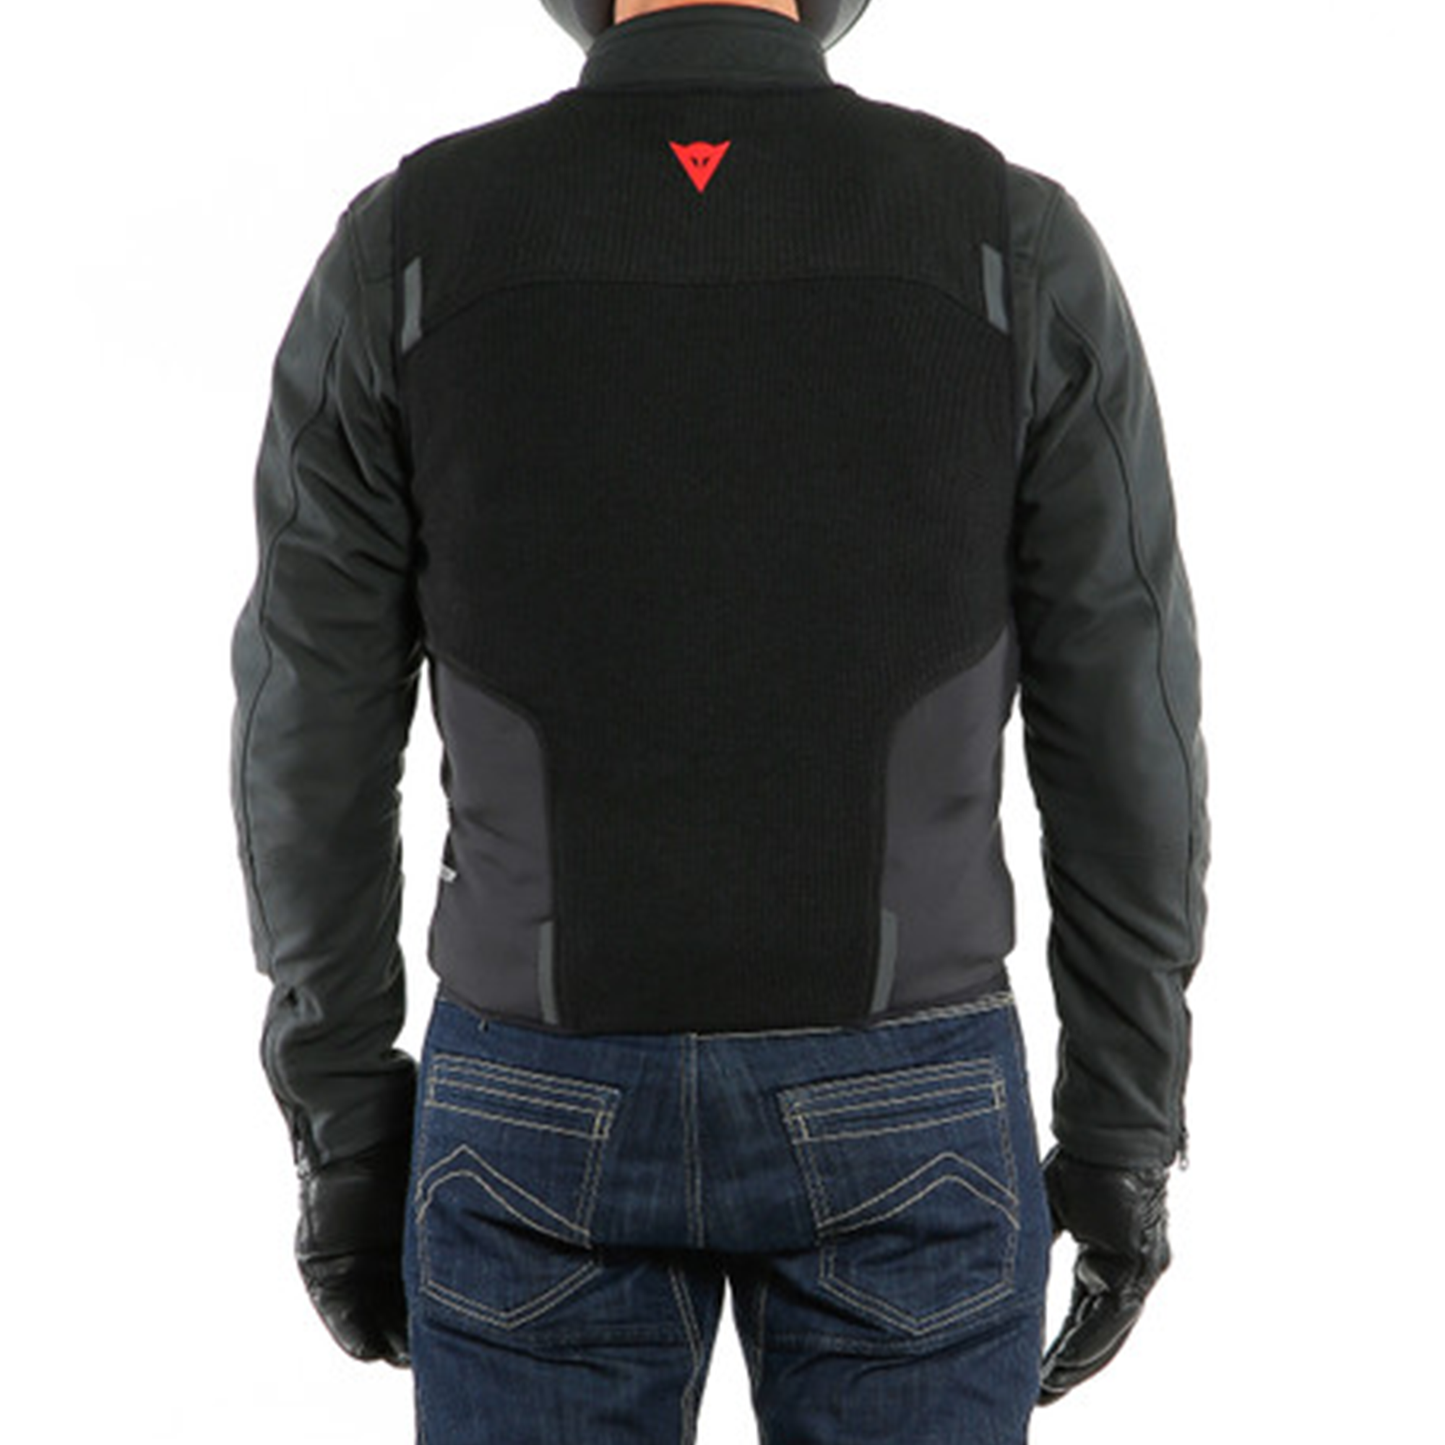 Dainese Smart Jacket - Black (001)